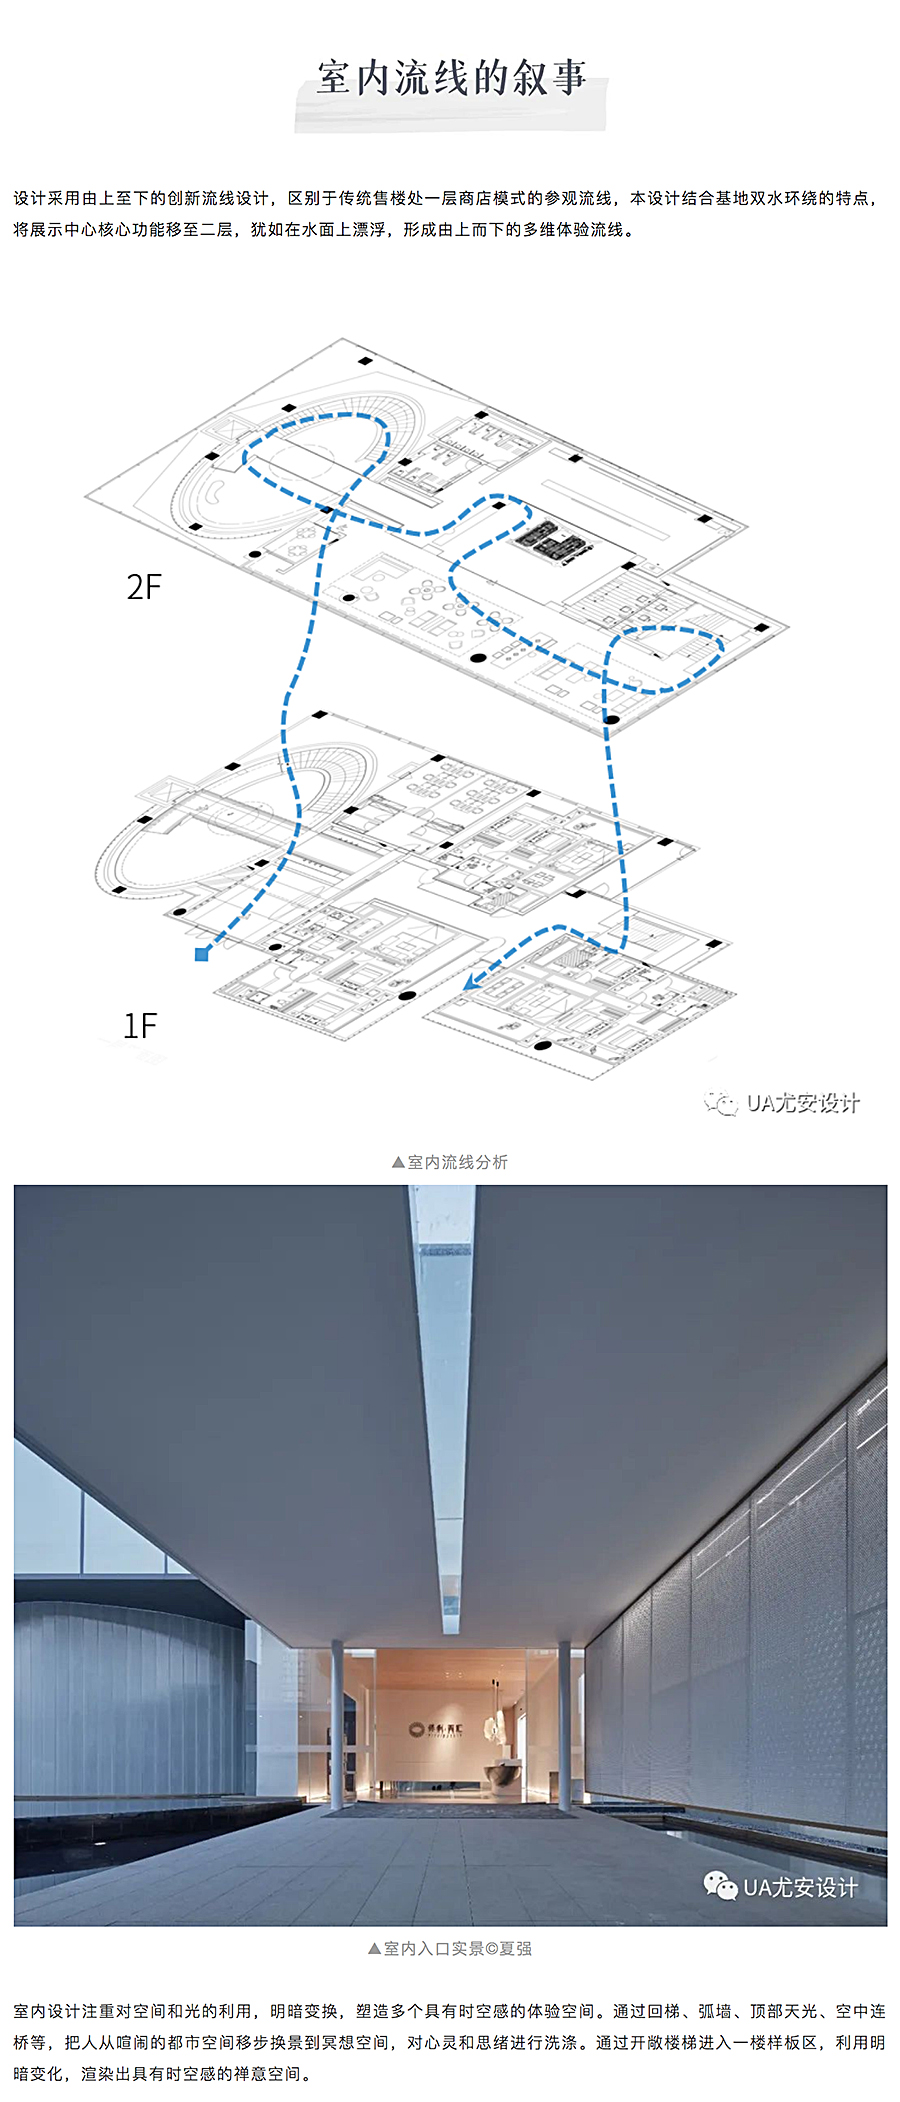 空间的艺术性塑造-_-郑州保利天汇展示中心_0007_图层-8.jpg